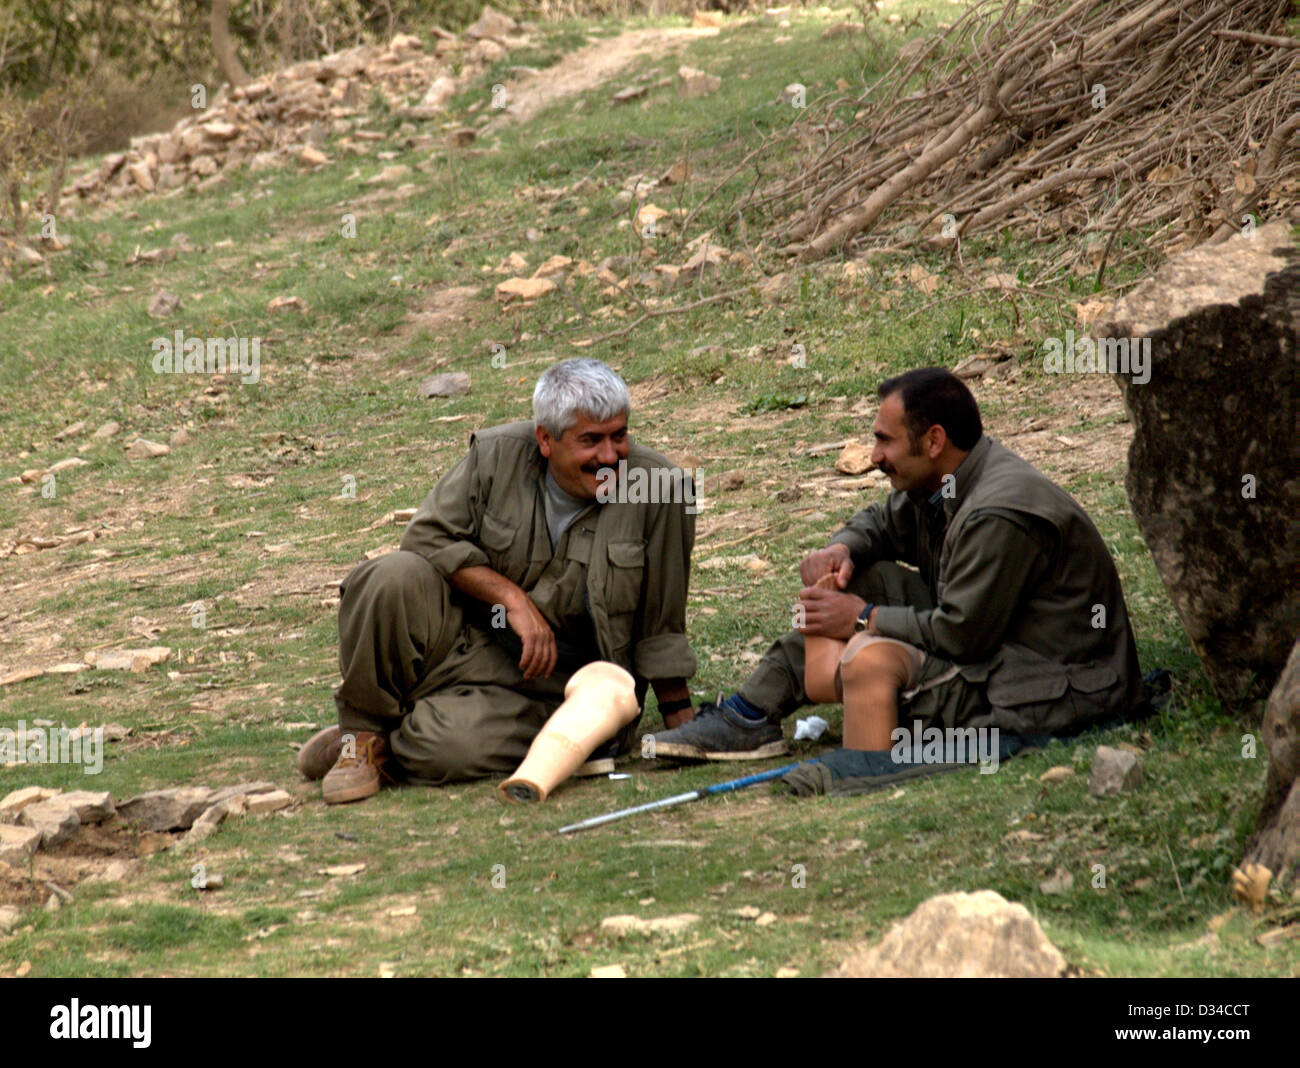 Les combattants de la guérilla du PKK (Parti des travailleurs kurdes) dans les montagnes de Qandil, près de la frontière iranienne le nord de l'Iraq Banque D'Images